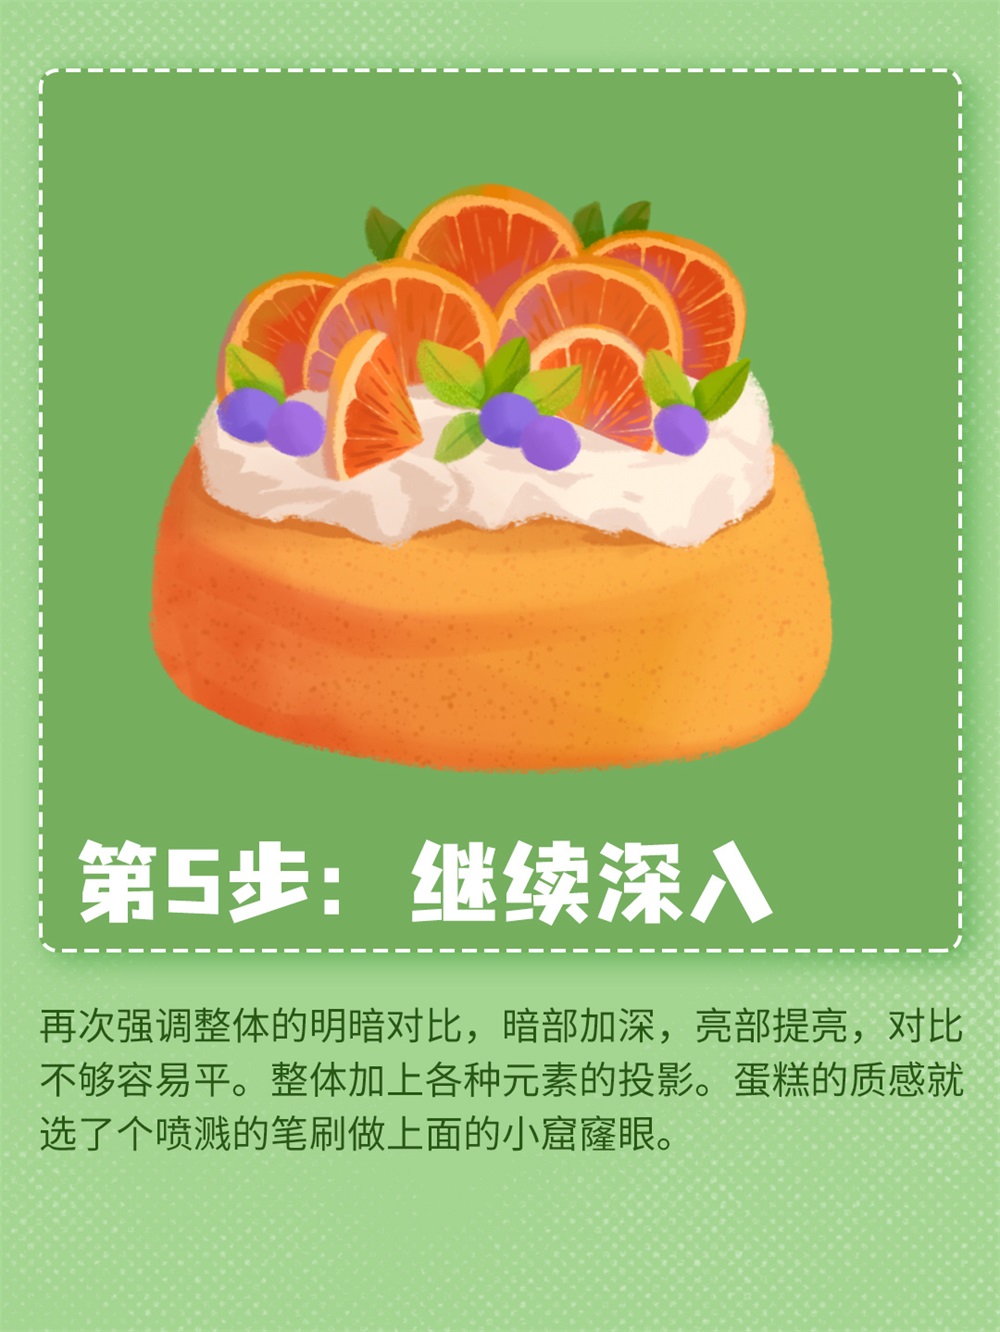 美食插画！6 步绘制松软香甜的橙子蛋糕